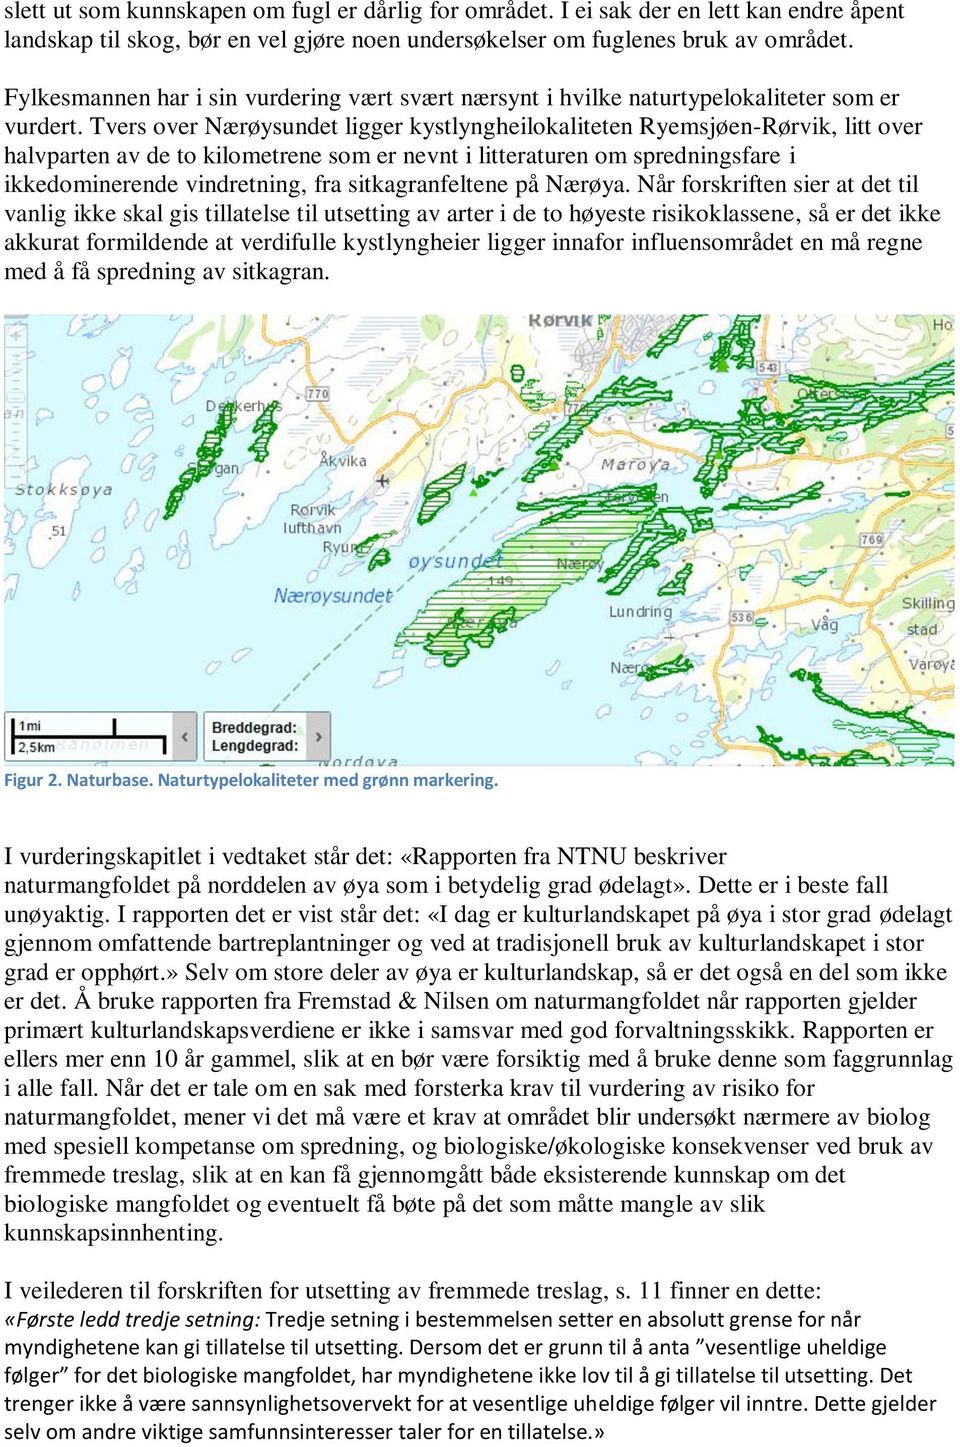 Tvers over Nærøysundet ligger kystlyngheilokaliteten Ryemsjøen-Rørvik, litt over halvparten av de to kilometrene som er nevnt i litteraturen om spredningsfare i ikkedominerende vindretning, fra